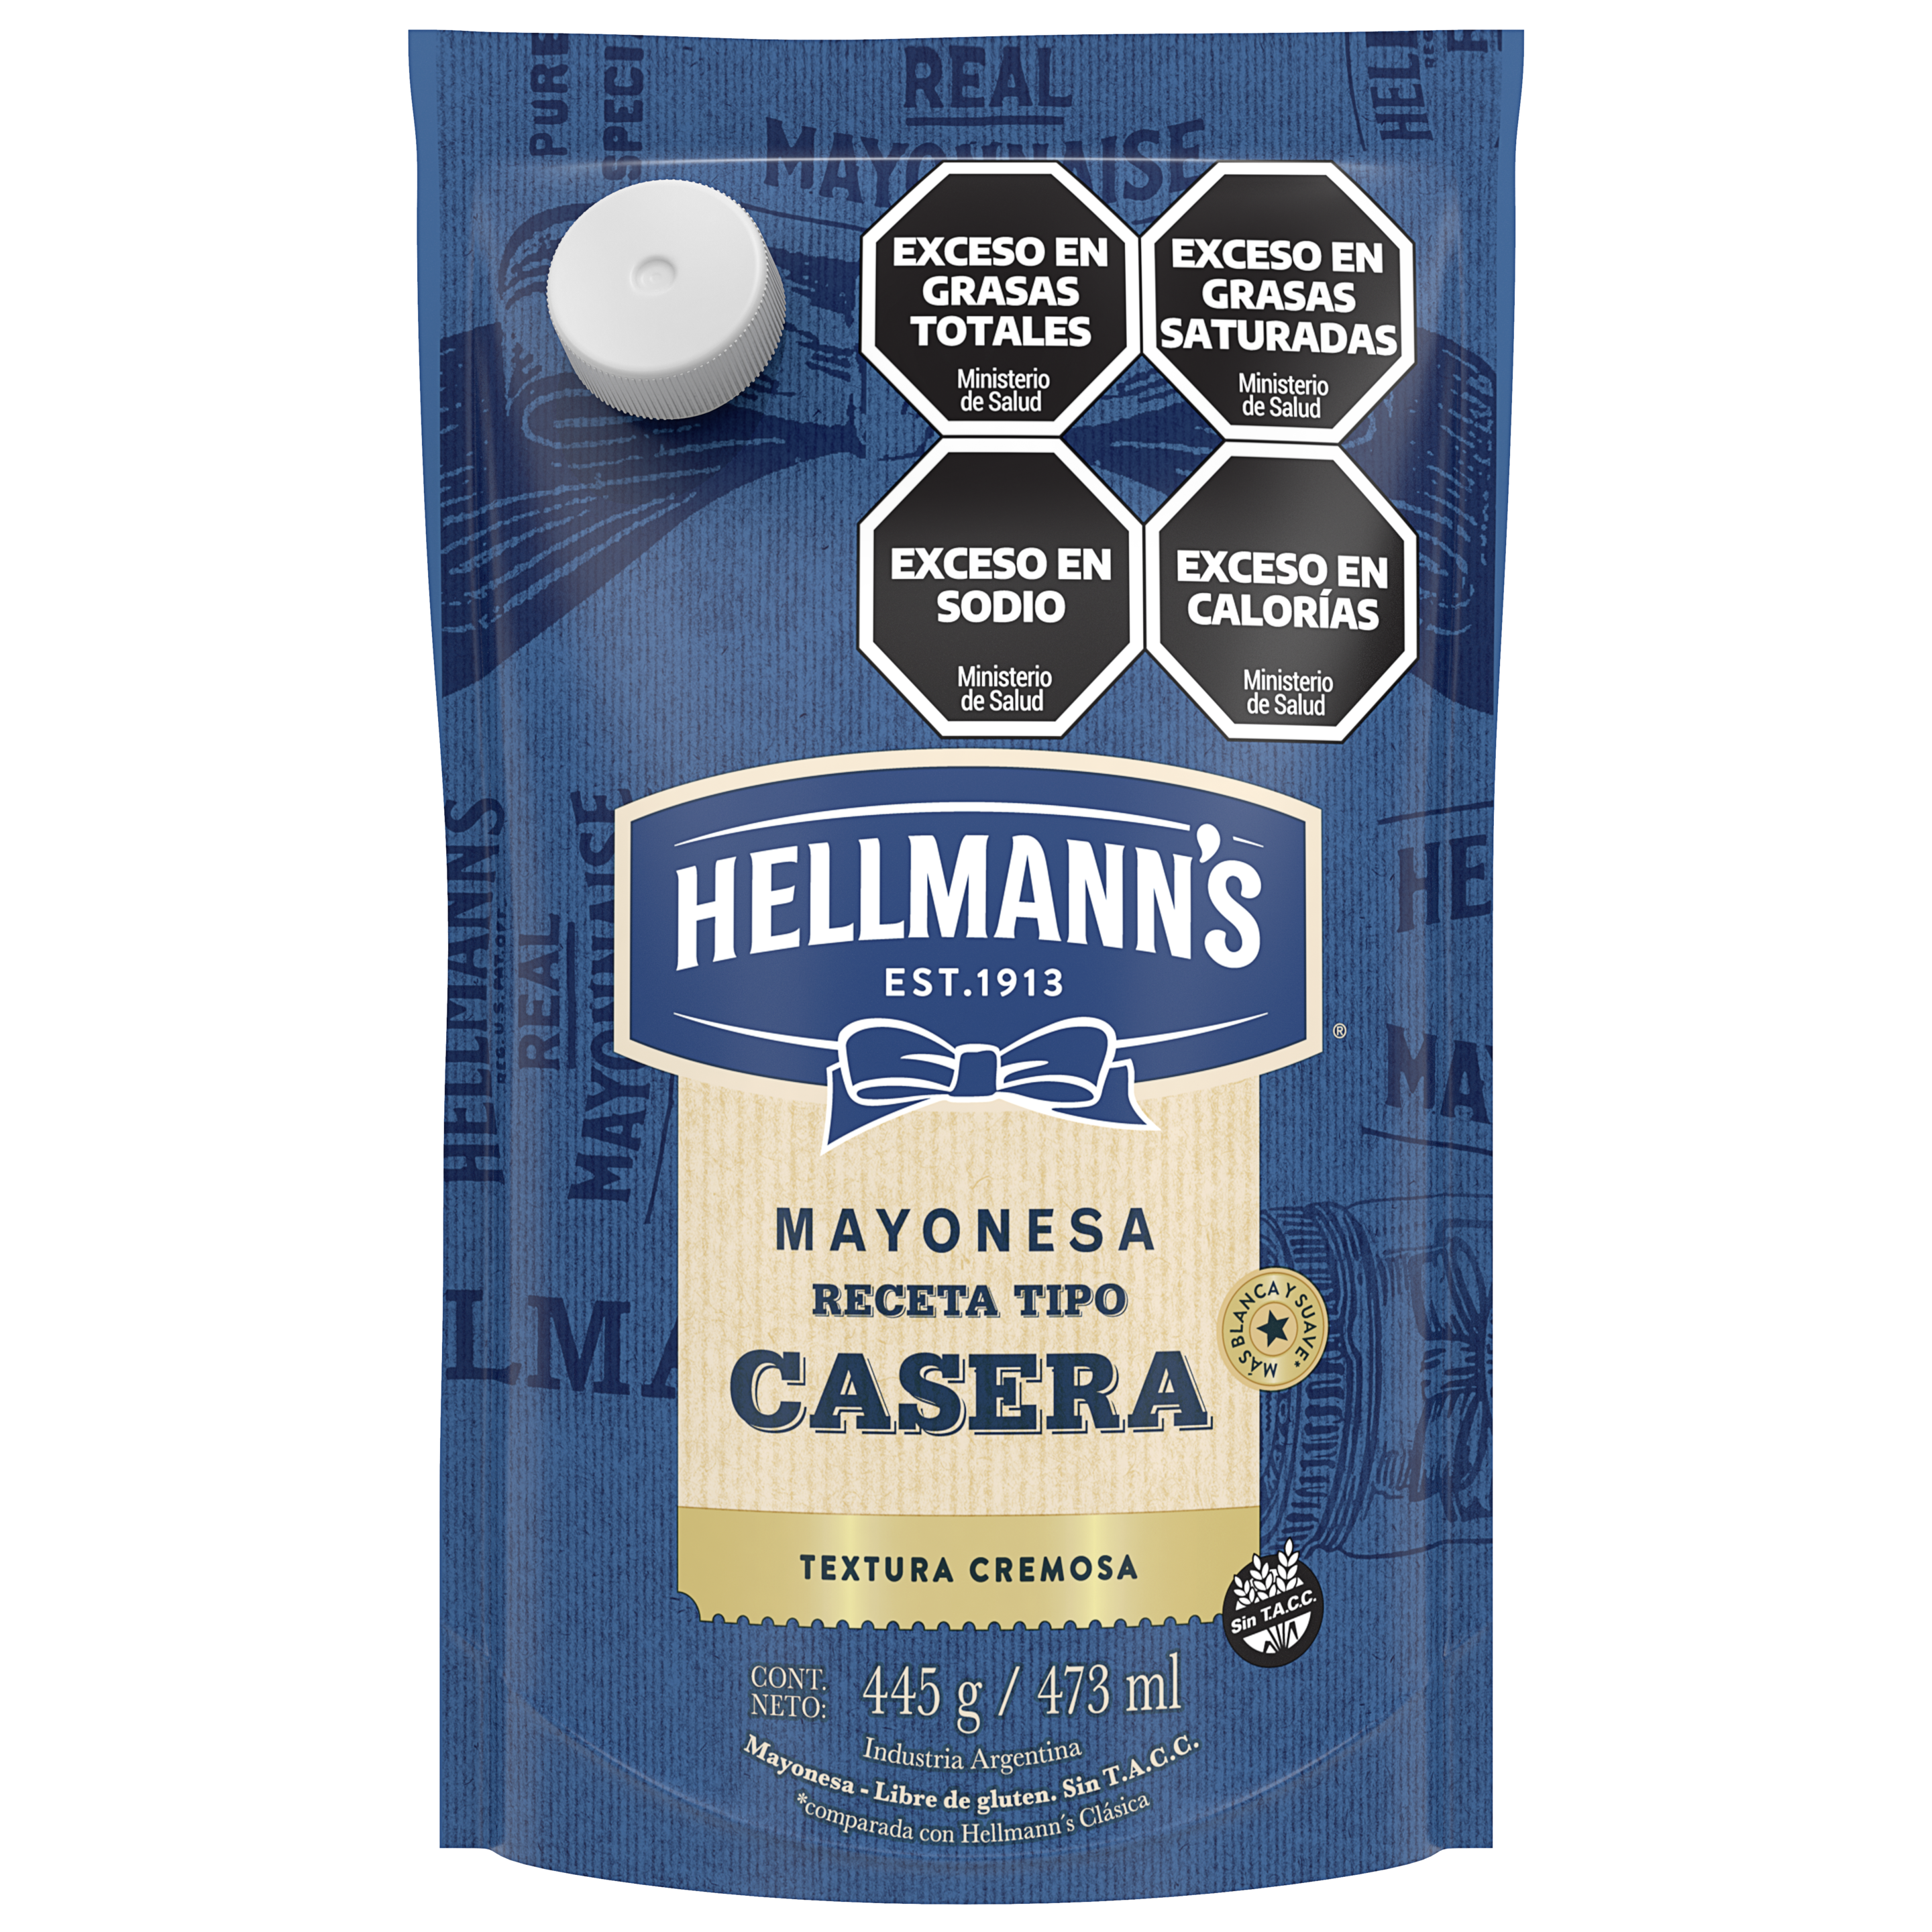 Imagen de envase de botella de mayonesa Receta Casera Hellmann's 445 gramos